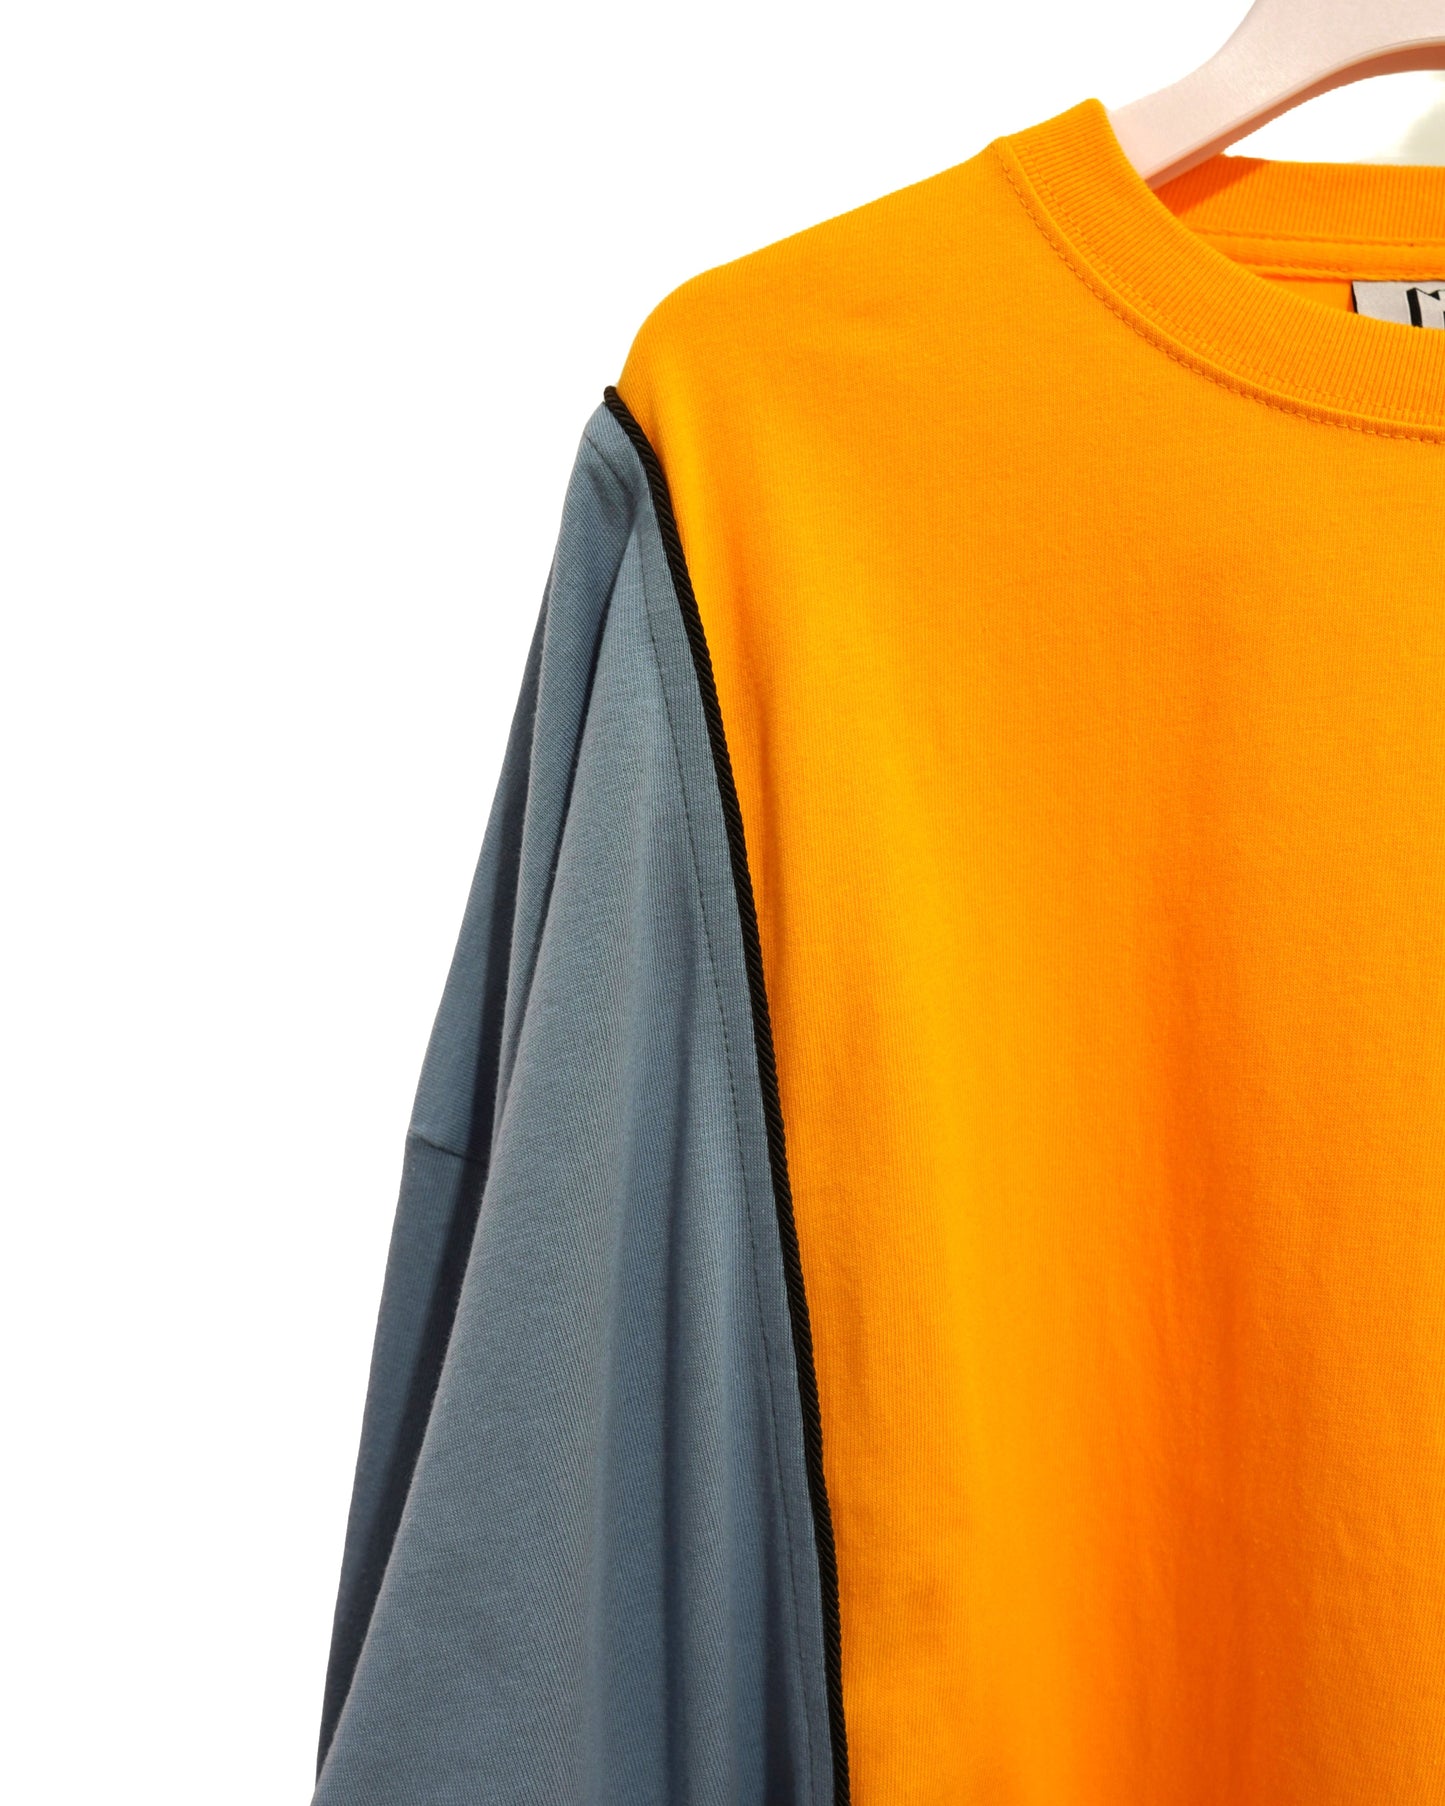 NON TOKYO / DOCKING T-SHIRT (ORANGE×BLUE) / 〈ノントーキョー〉ドッキングTシャツ (オレンジ×ブルー)